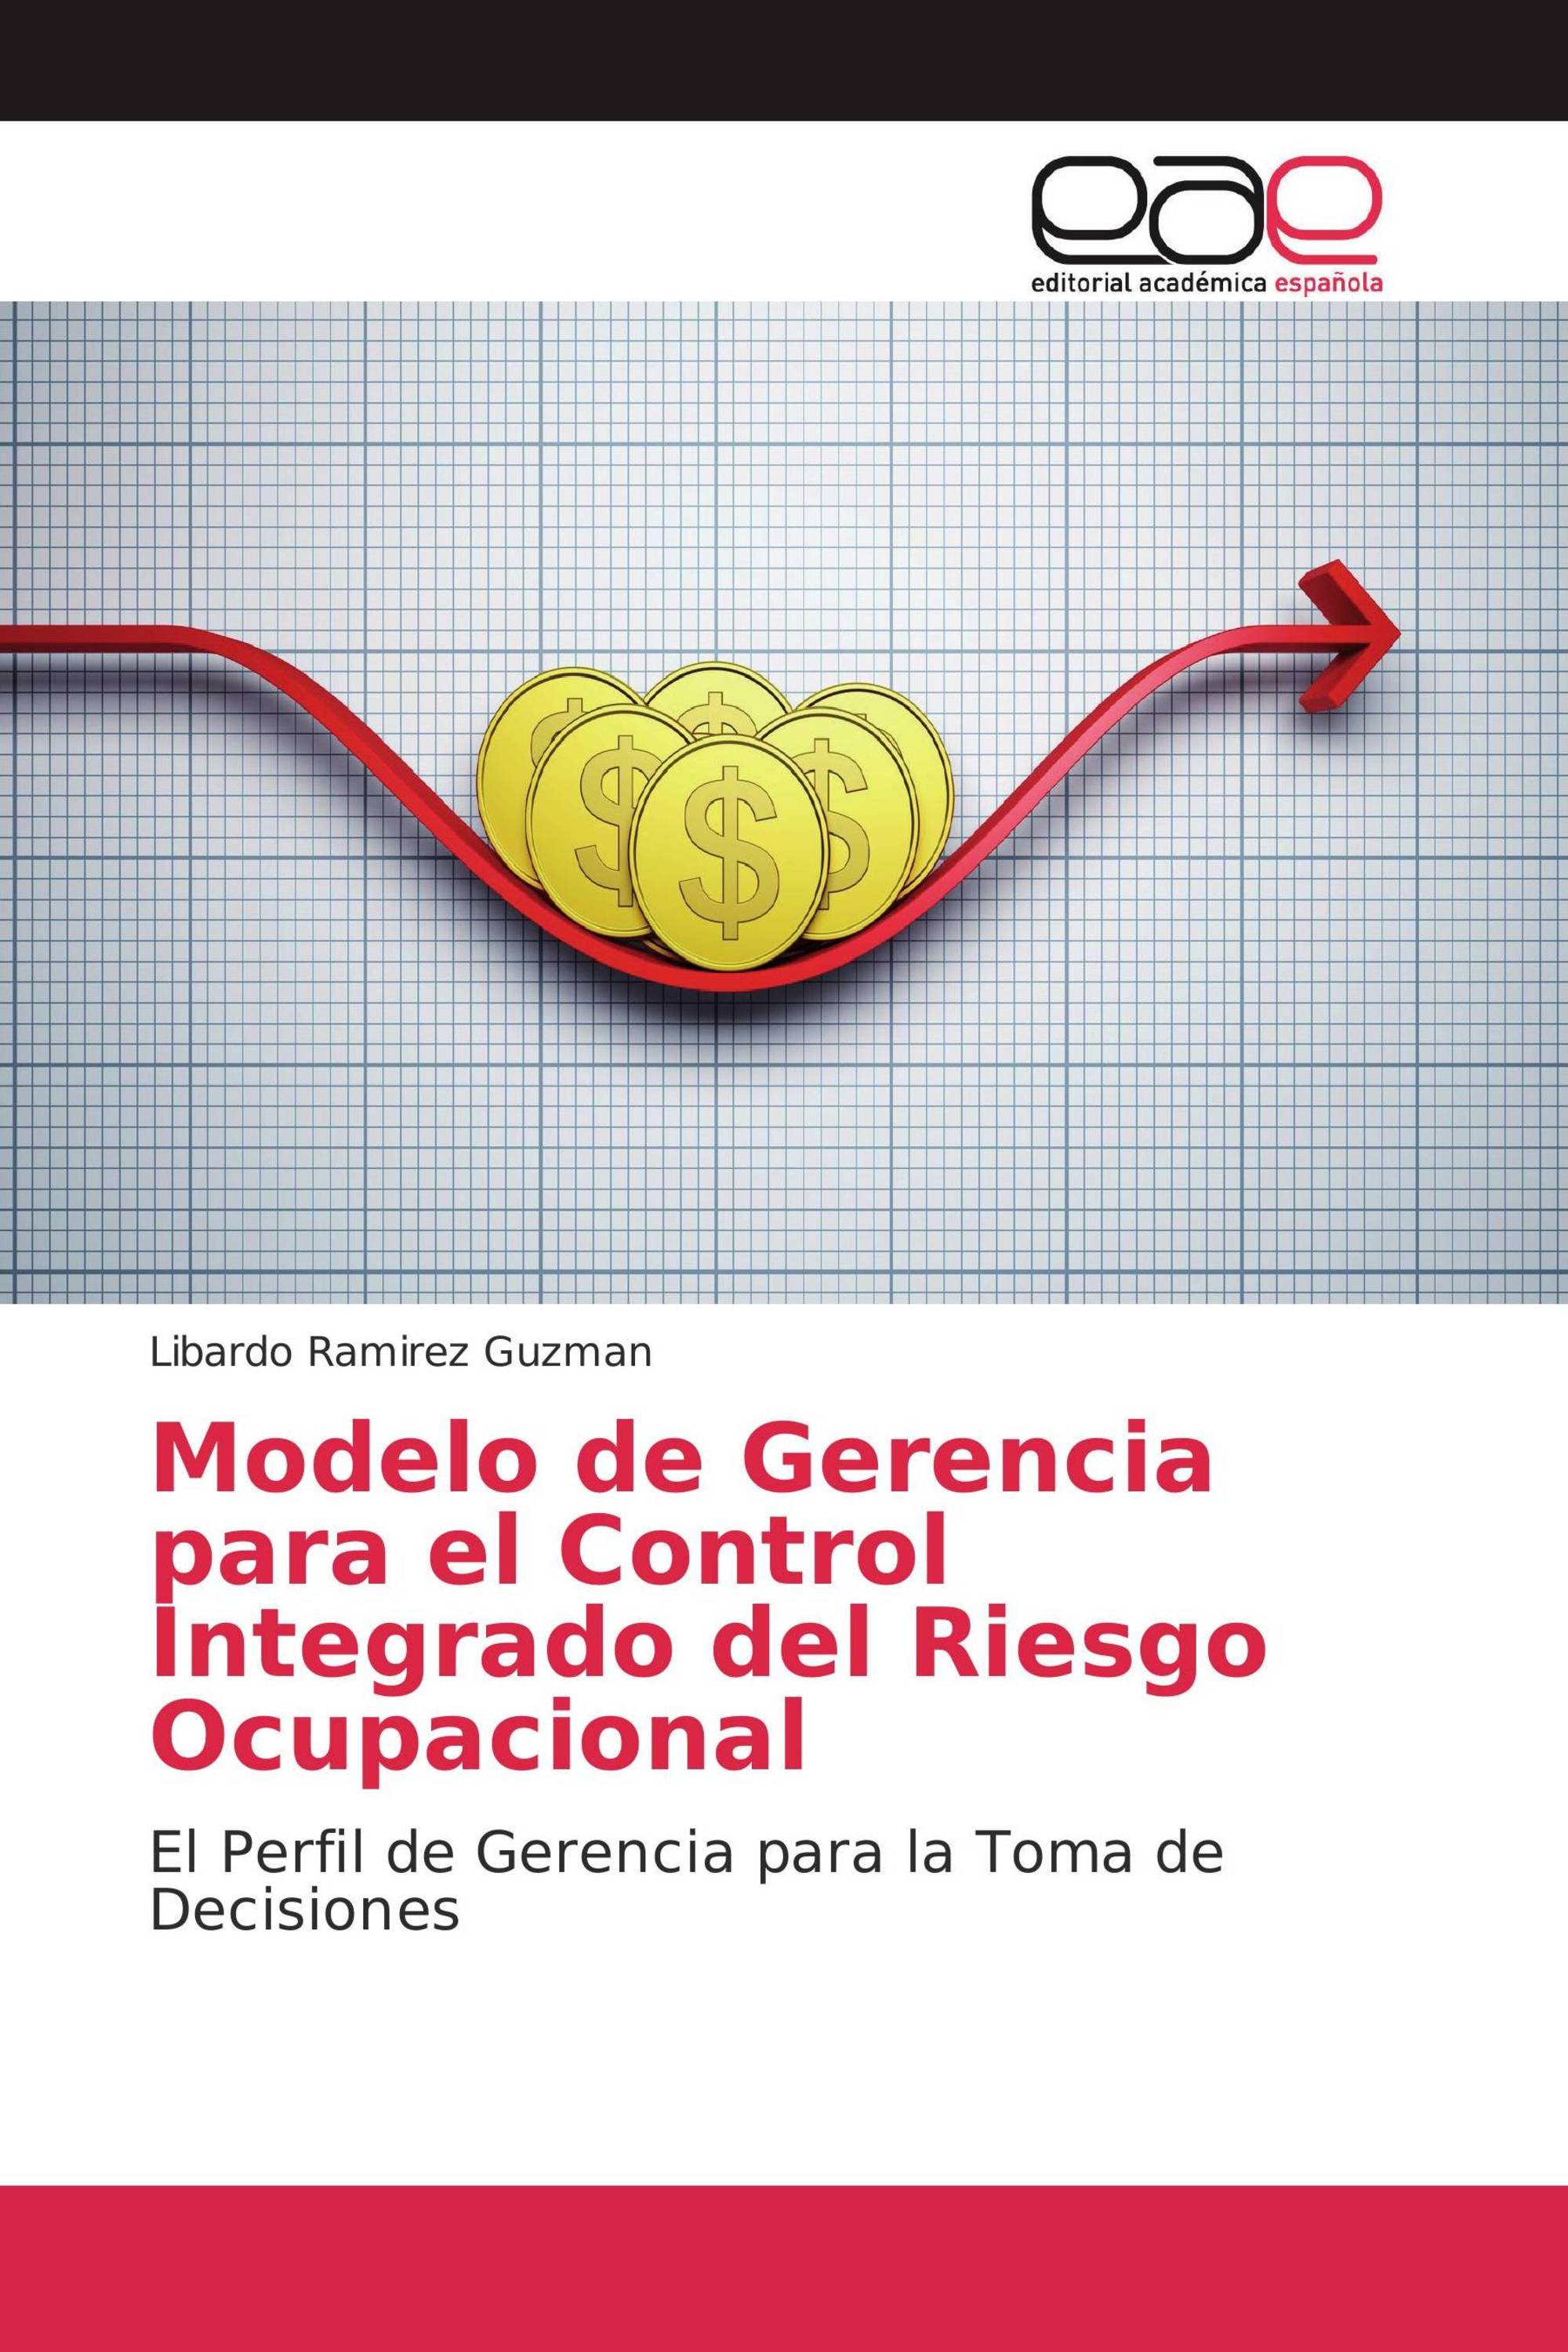 Modelo de Gerencia para el Control Integrado del Riesgo Ocupacional